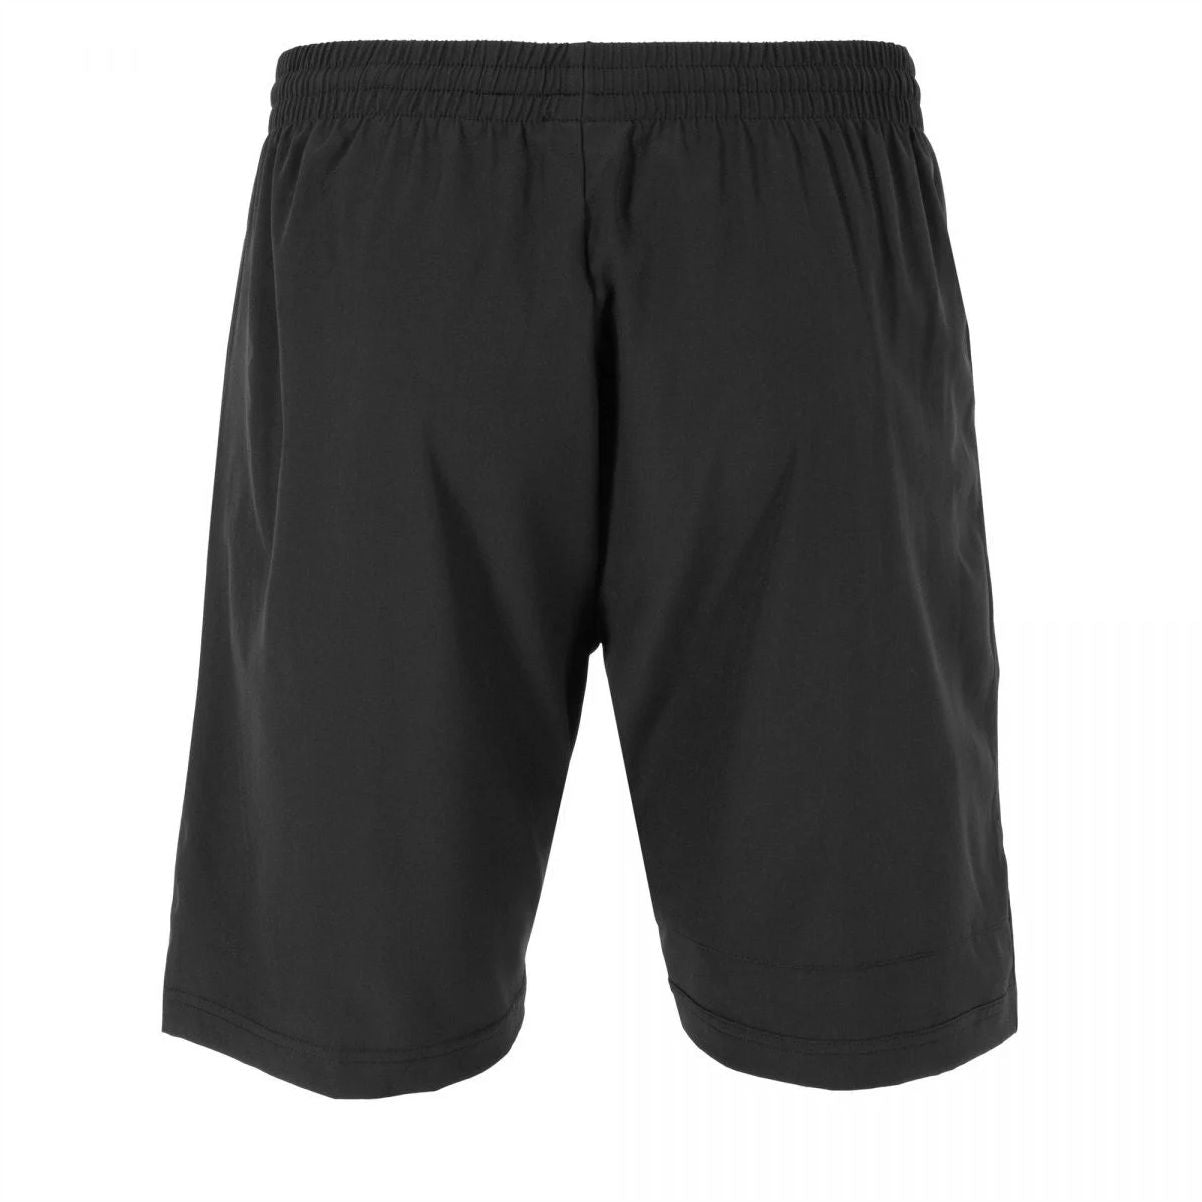 Stanno - Field Woven Shorts - Black - Junior